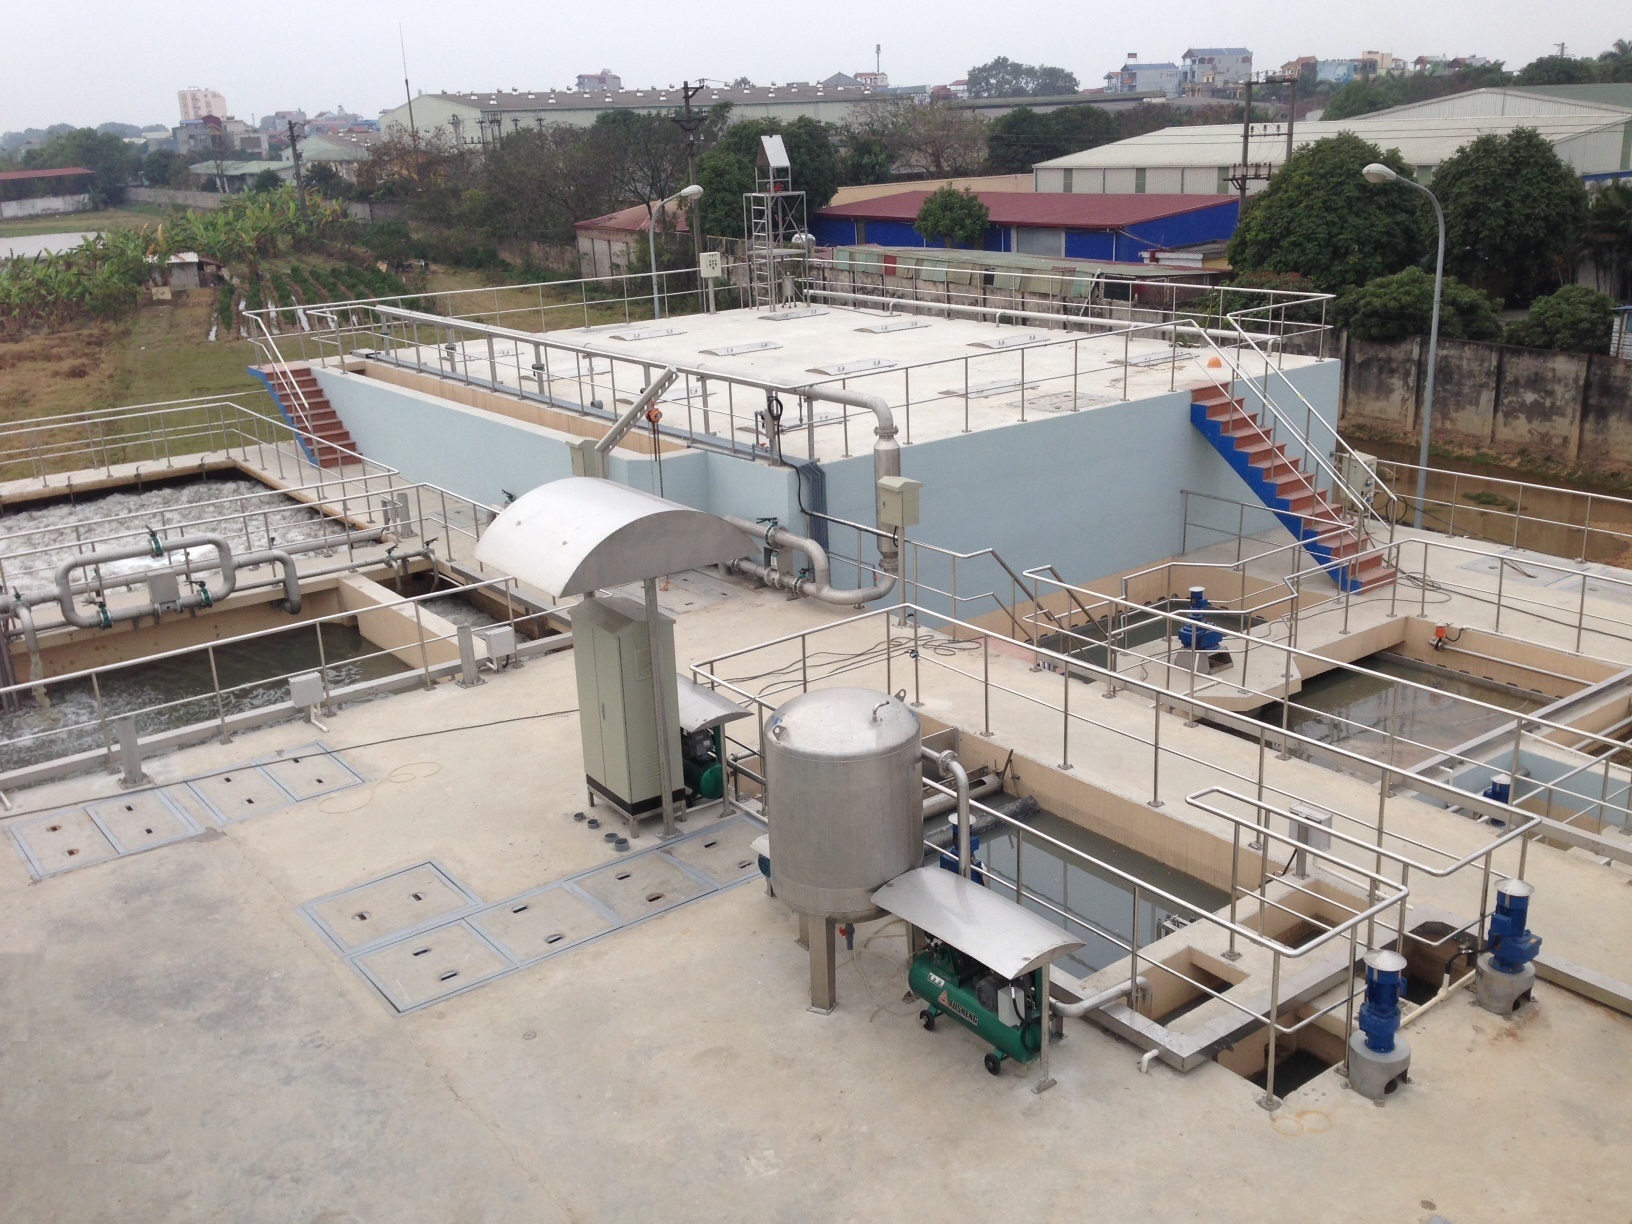 Nghiệm thu đưa vào sử dụng – Hệ thống xử lý nước thải nhà máy Kinh Đô Miền Bắc